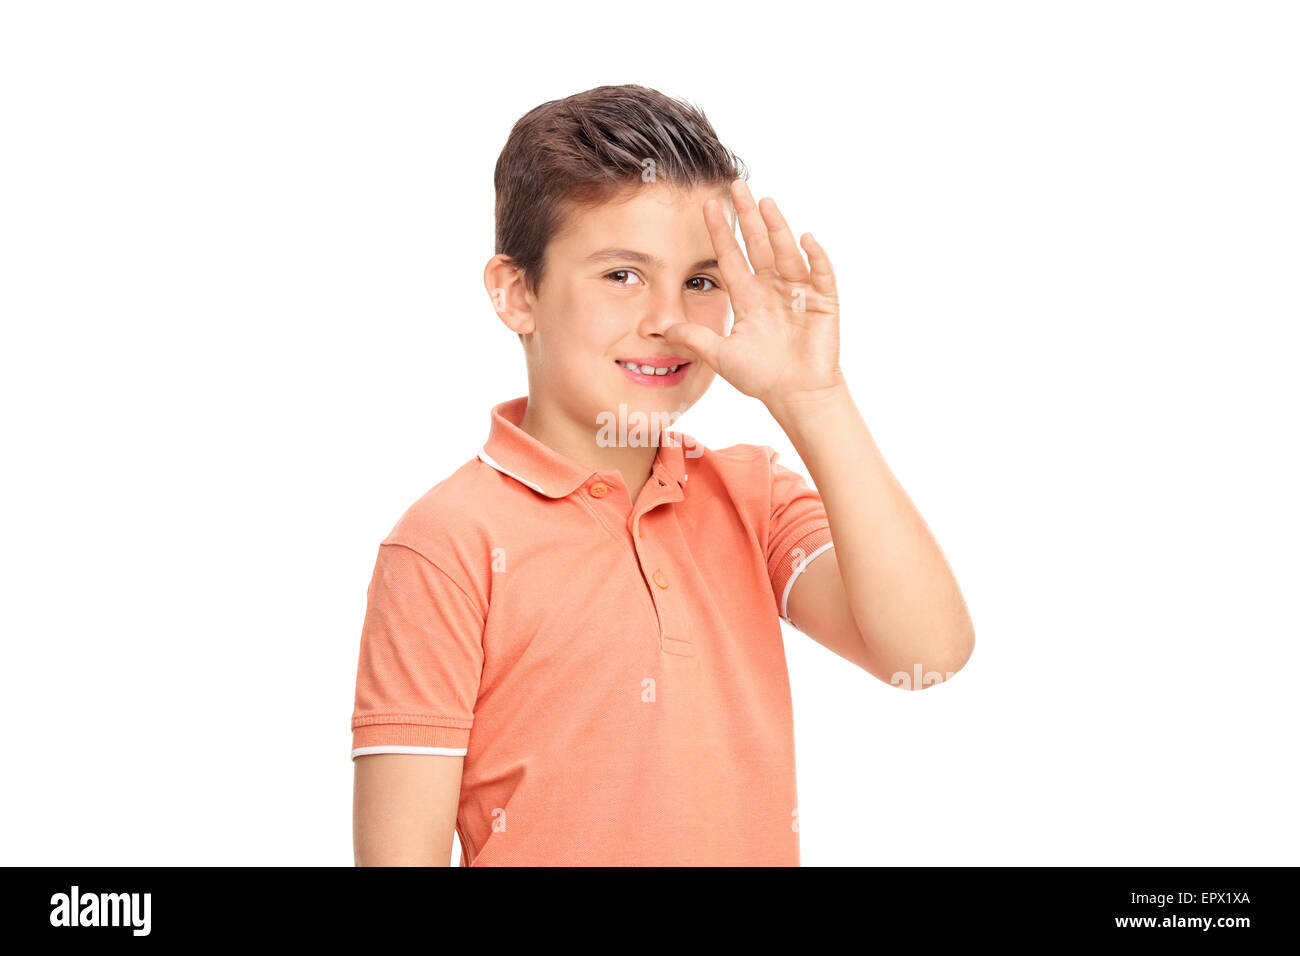 Dummer kleiner Junge eine kindliche Hand Geste und schaut in die Kamera, die isoliert auf weißem Hintergrund Stockfoto